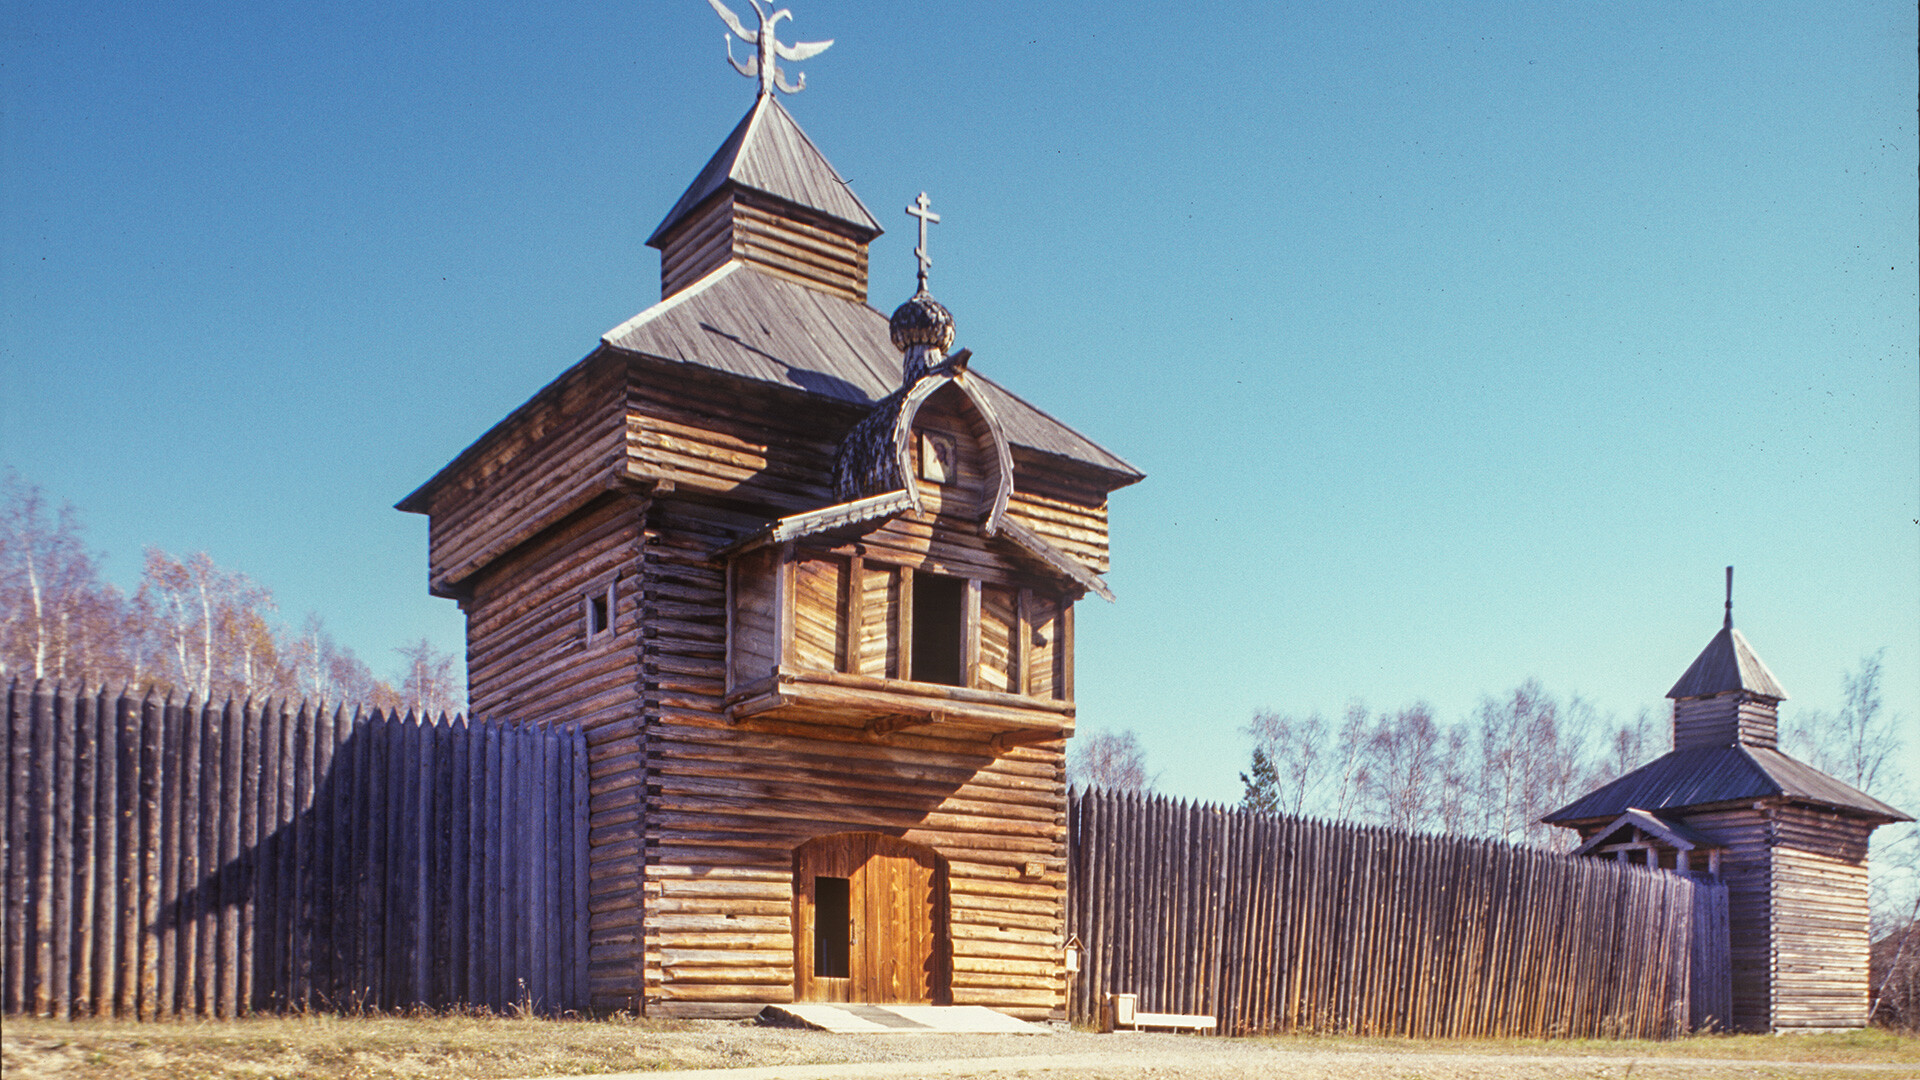 Taltsy (près d’Irkoutsk). Tour du Sauveur et mur en rondins reconstruit du fort d’Ilimsk sur la rivière Angara